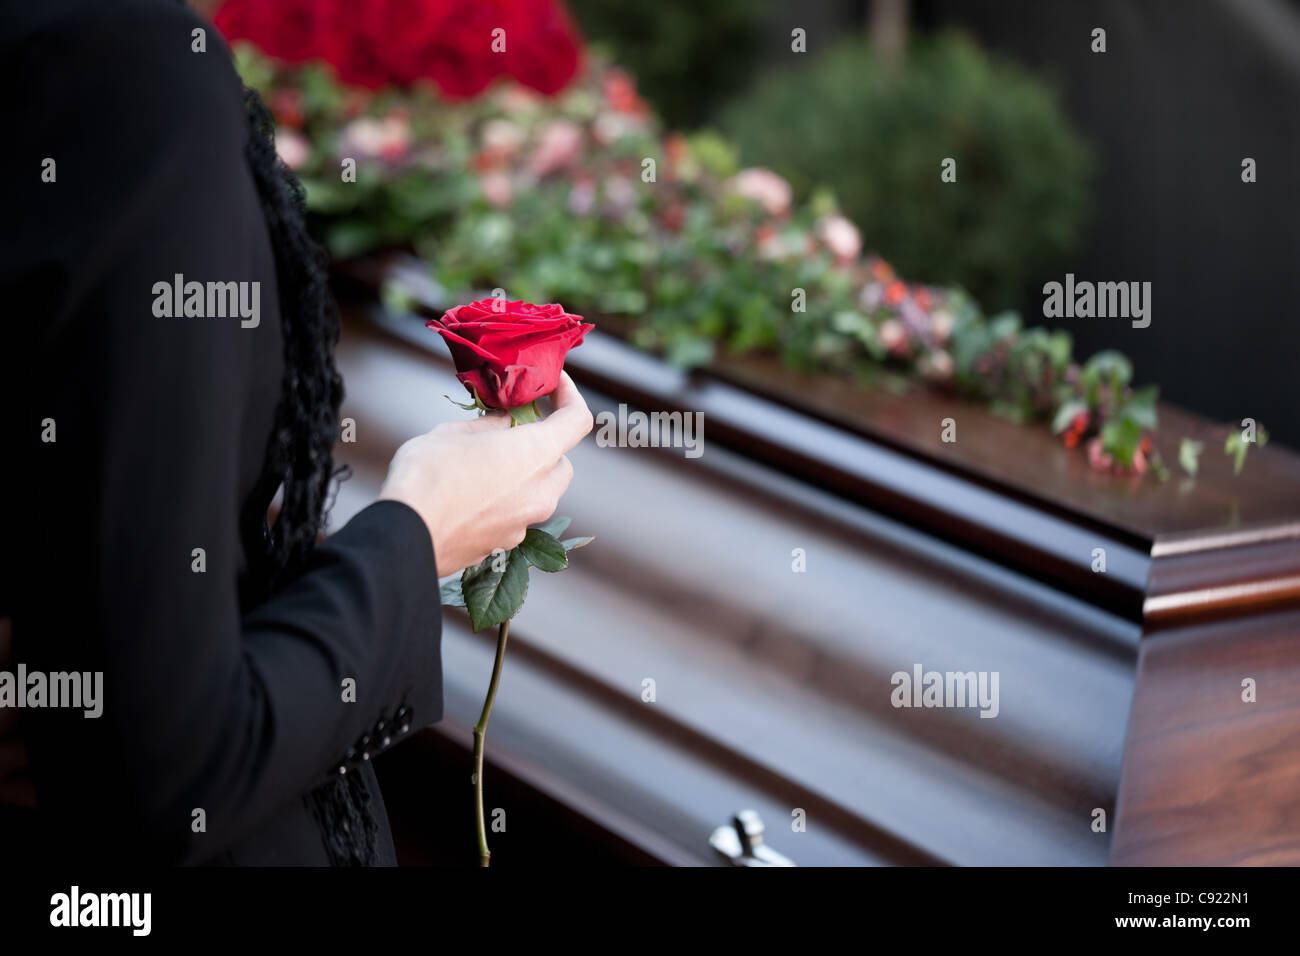 La religión, la muerte y el dolor - funeral y cementerio; funerales con ataúd Foto de stock